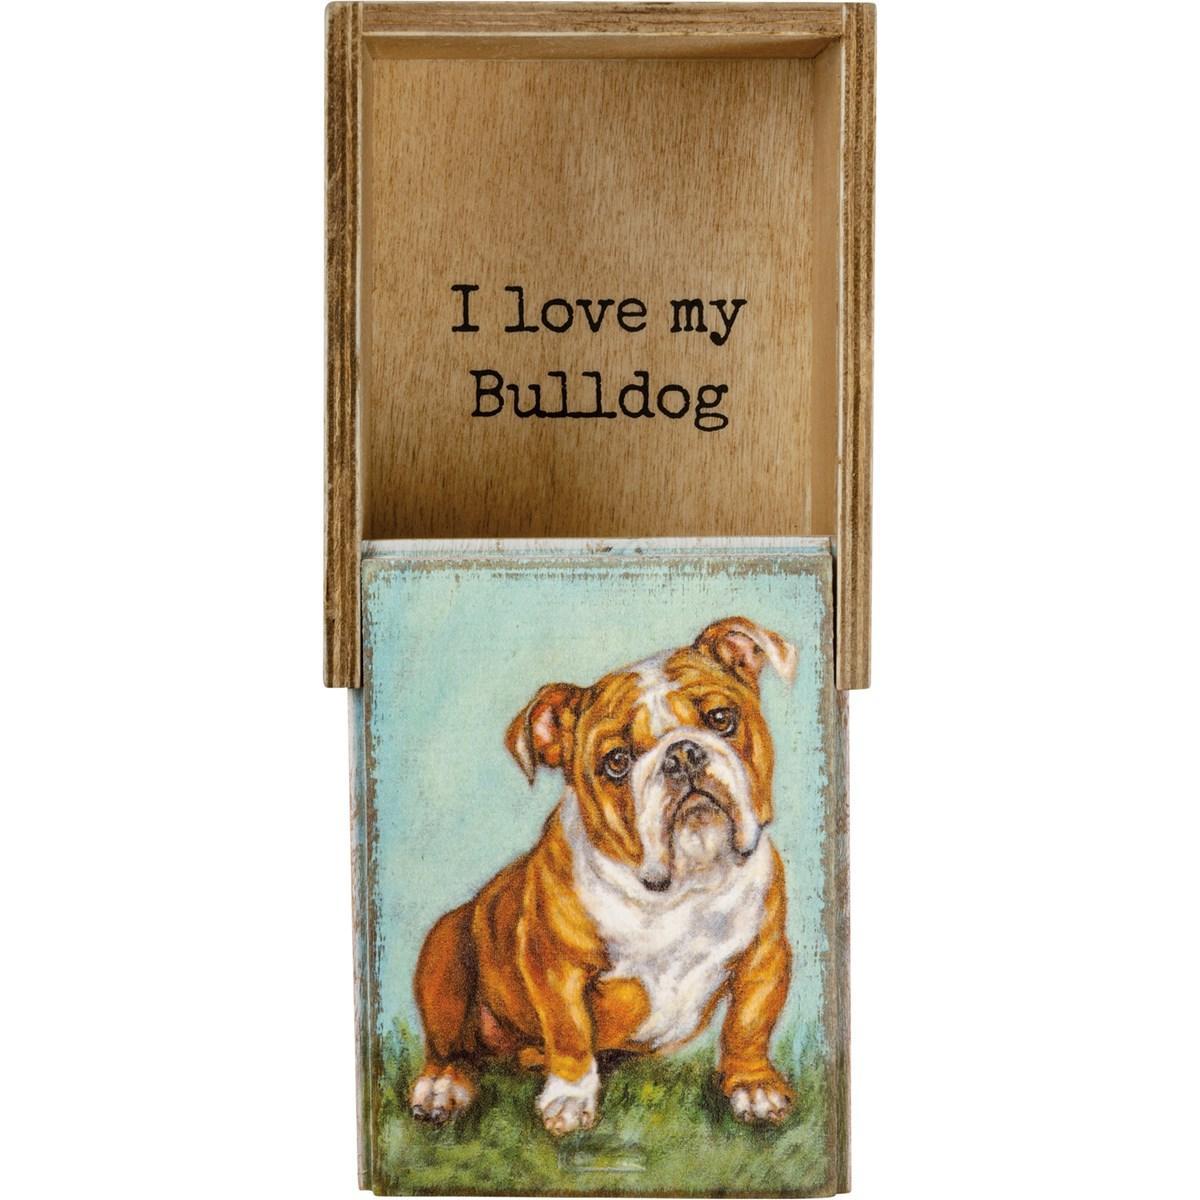 I Love My Bulldog Keepsake Box